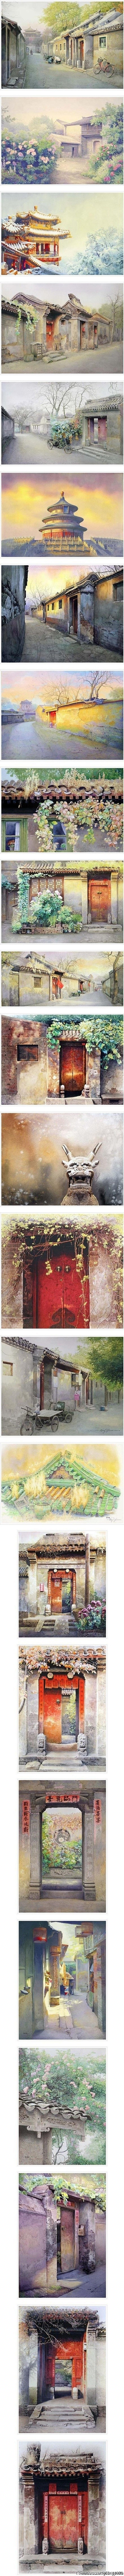 老北京水彩畫